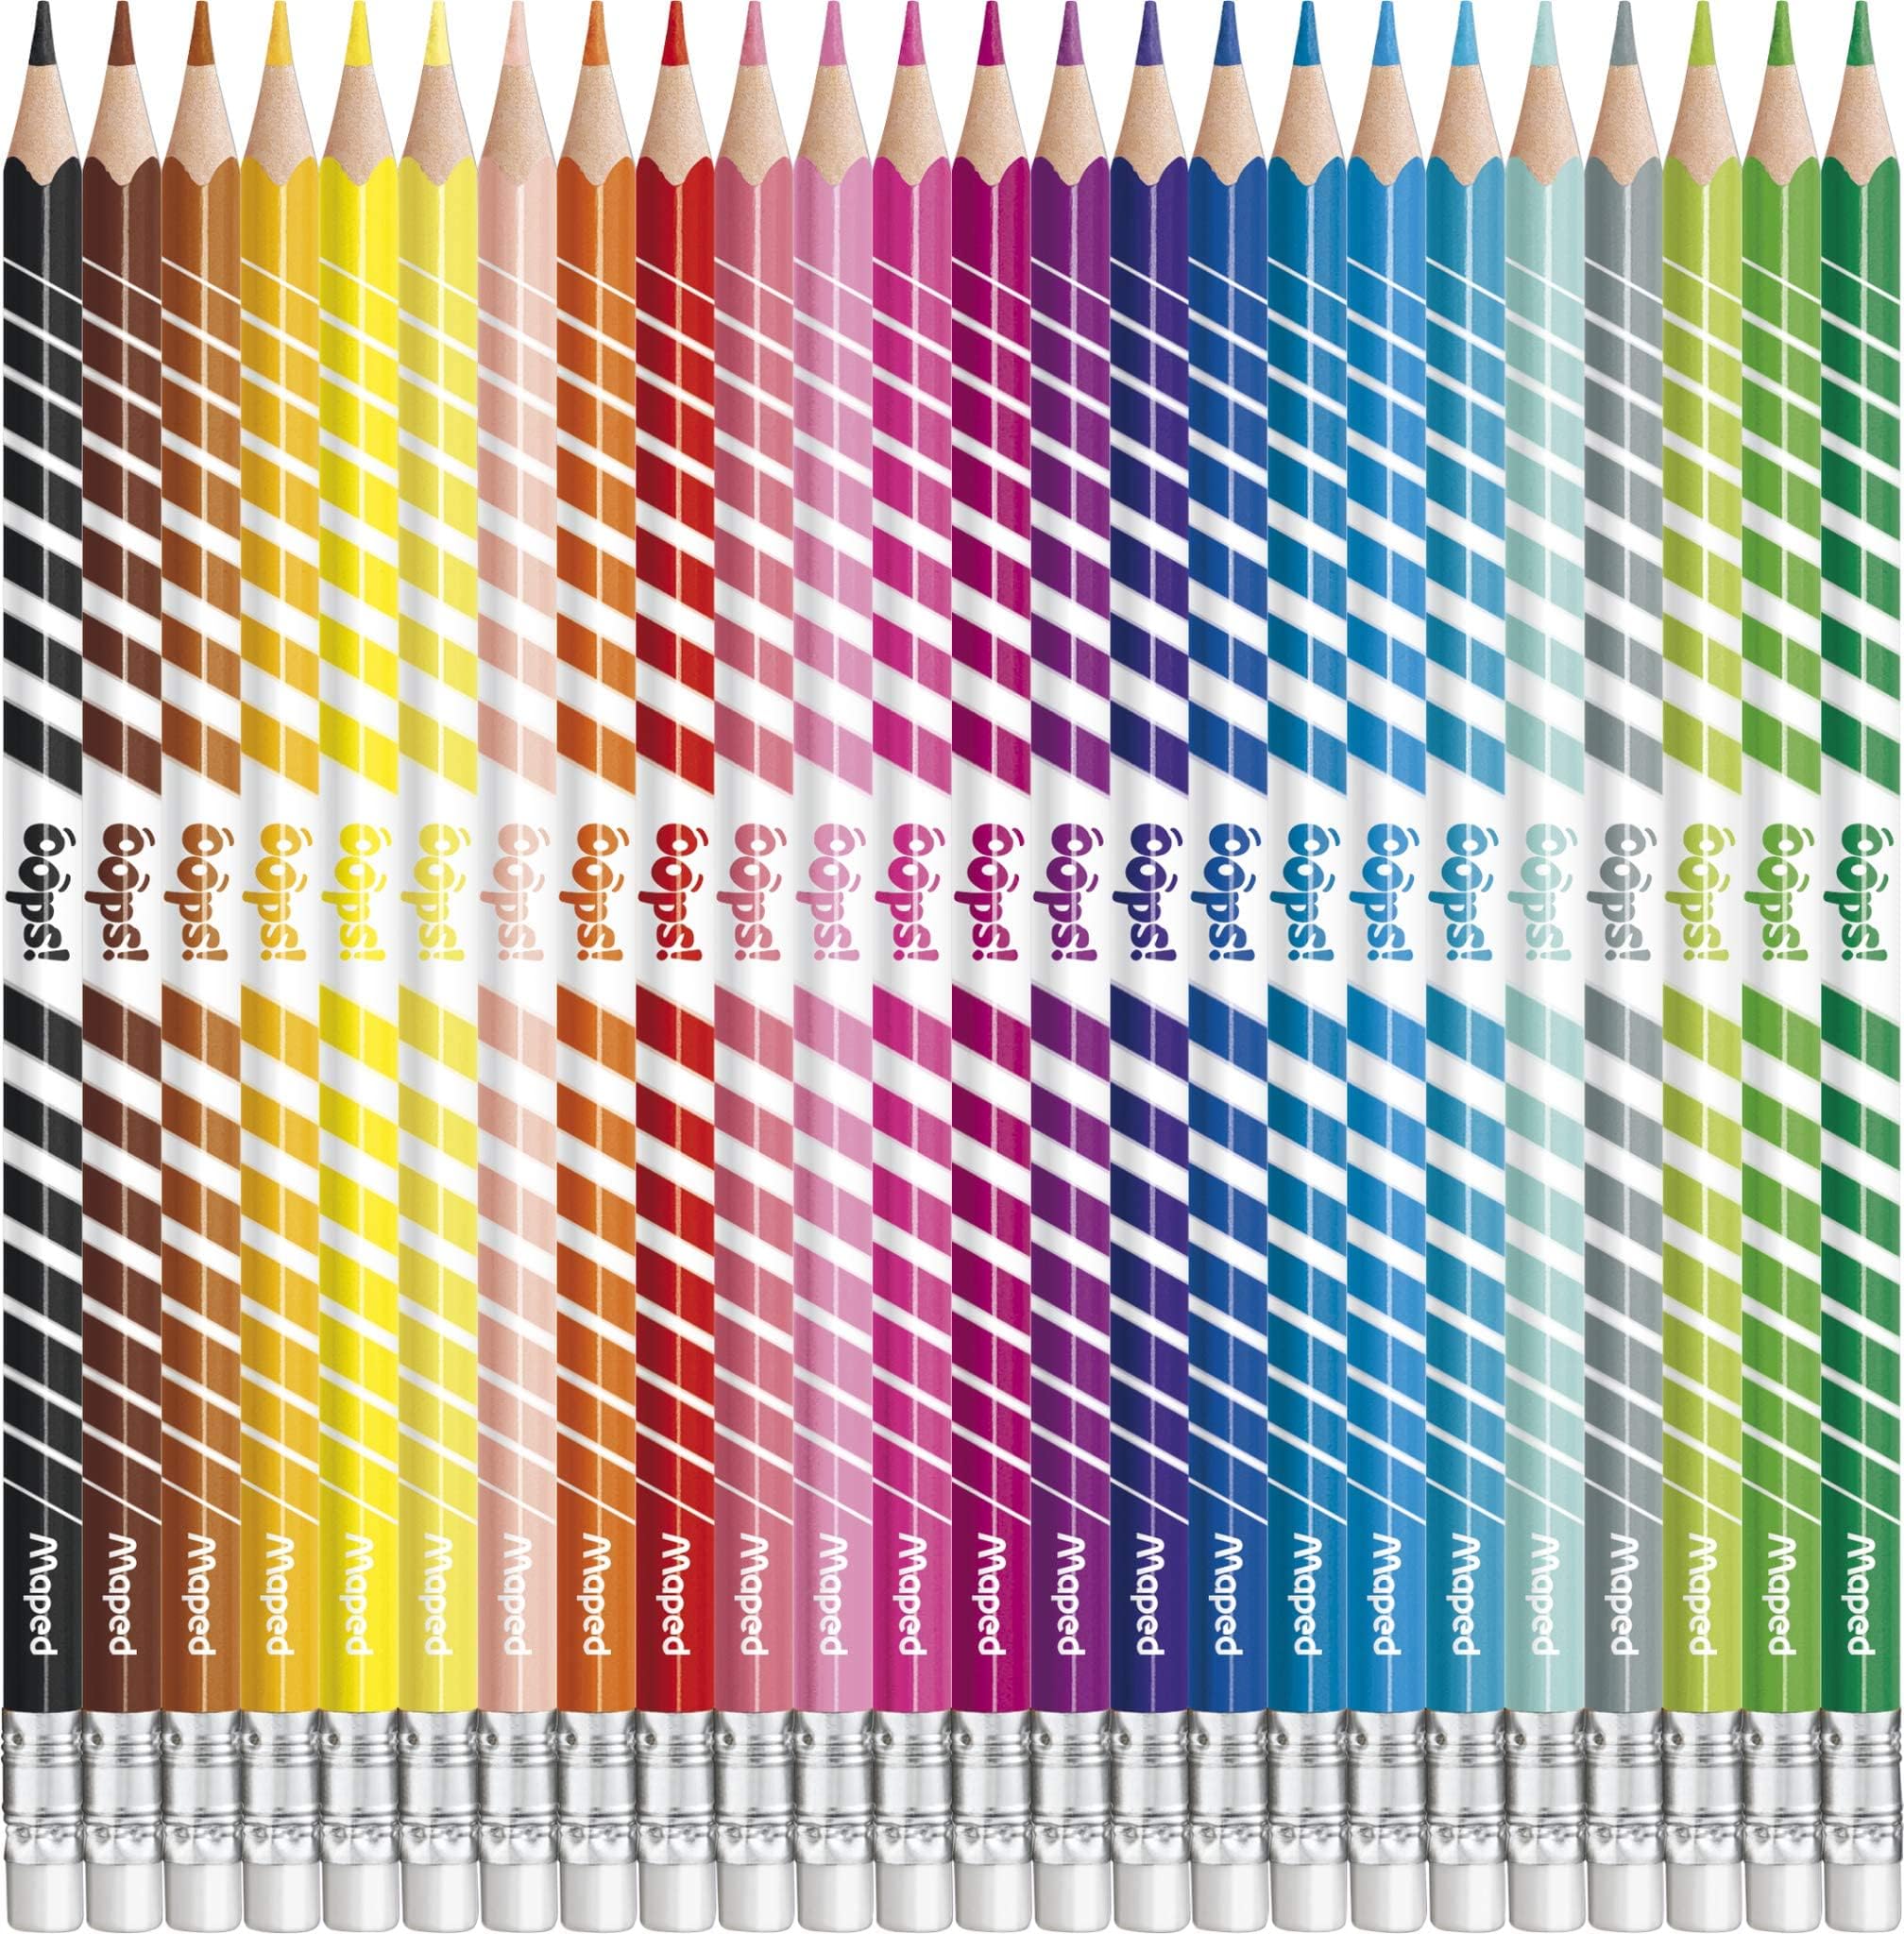 Maped Color'Peps Oops Erasable Color Pencils Set - Pack of 24 Multicolor مابد مجموعة اقلام تلوين اوبس قابلة للمسح من كولور بيبس - عبوة من 24 قطعة متعددة الالوان